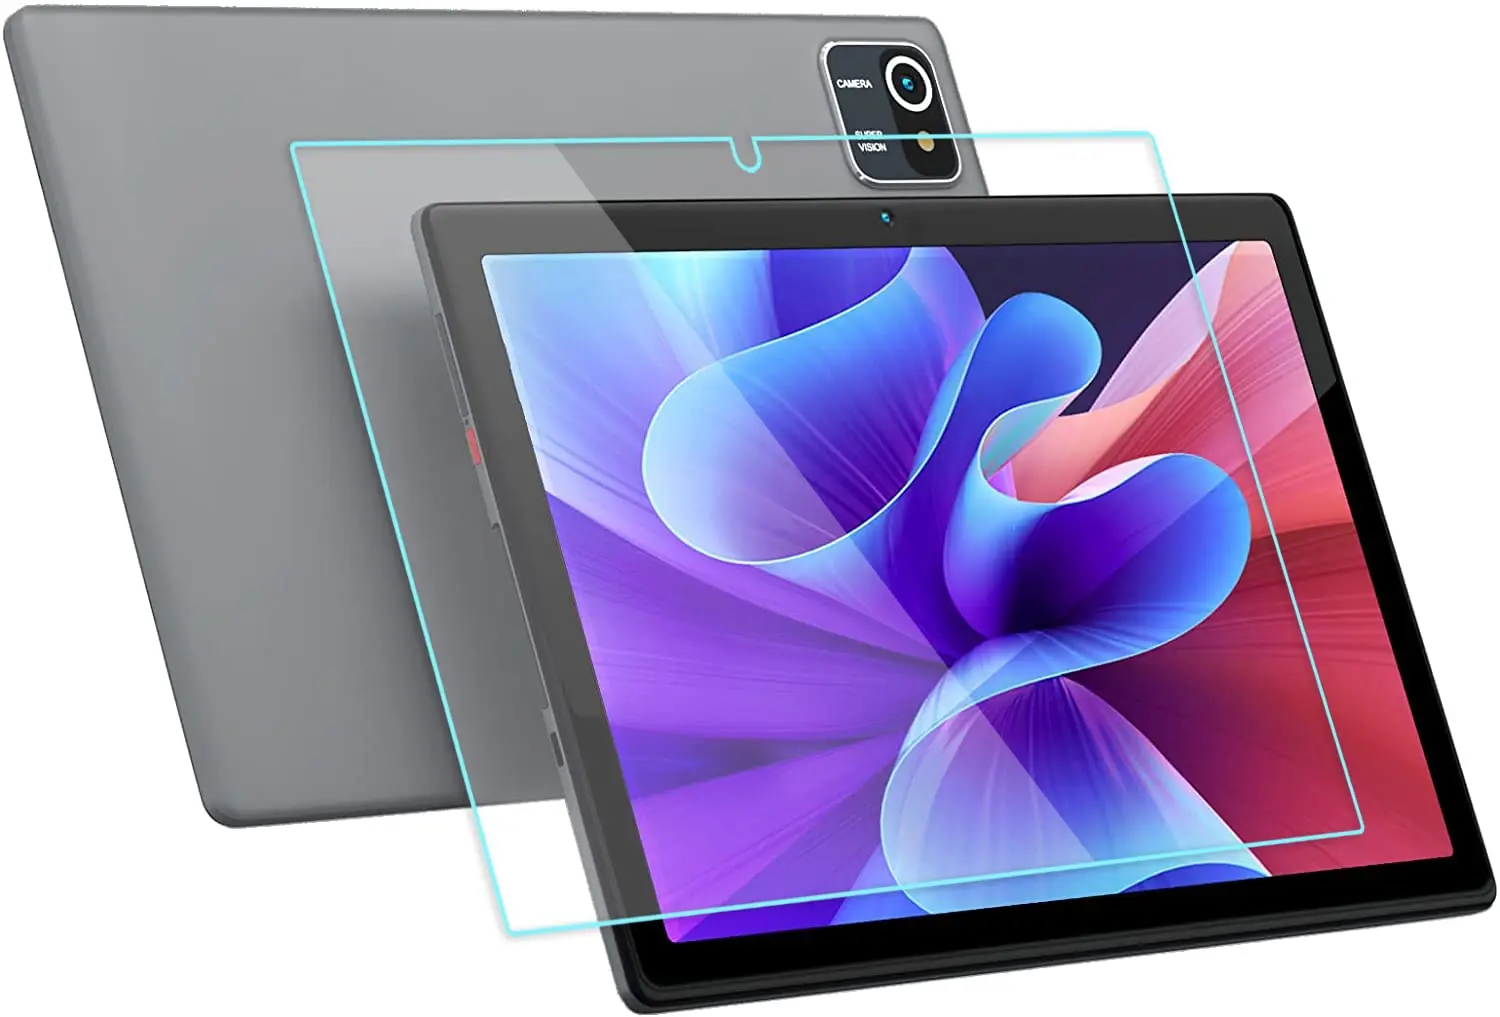 vidrio para tablet samsung 10.1 - Cómo agrandar la pantalla de mi tablet Samsung